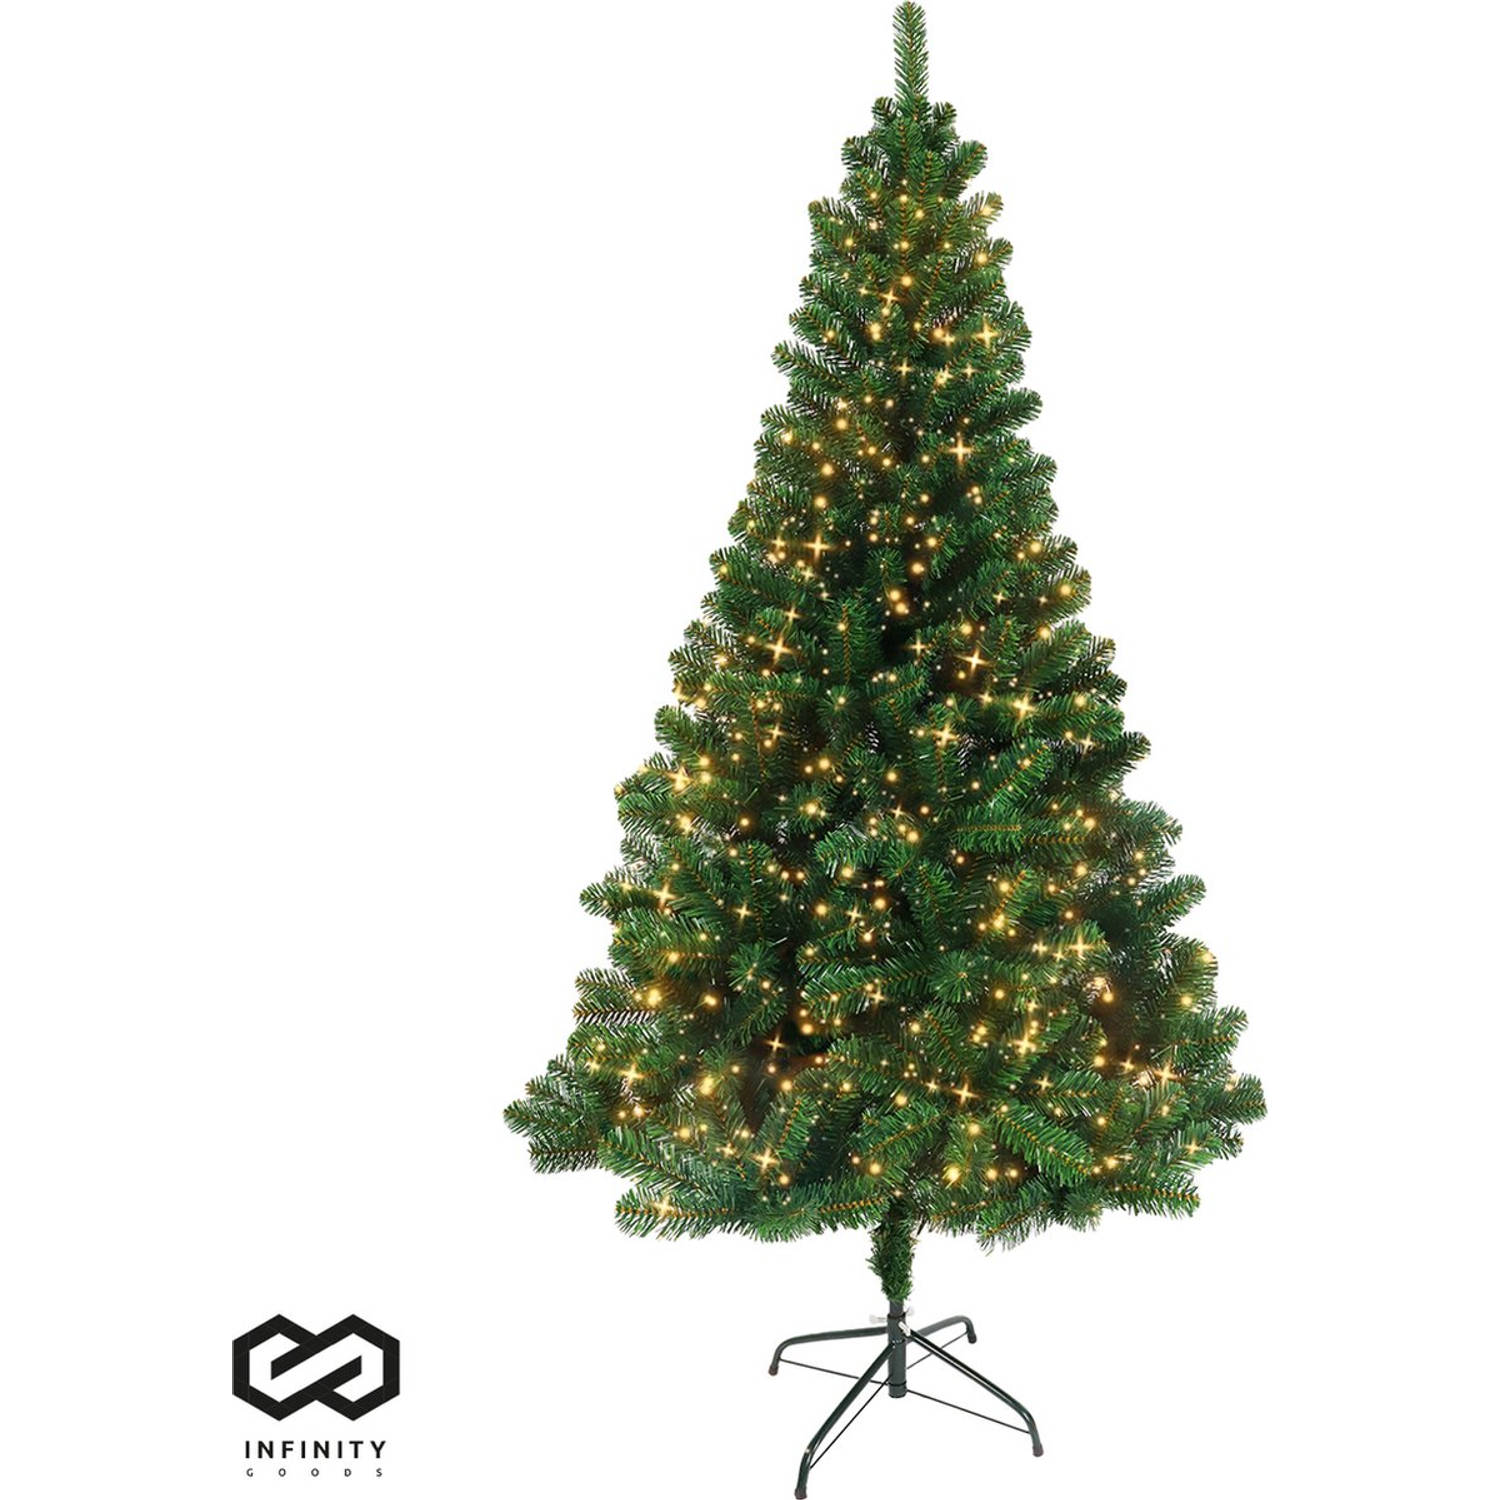 Infinity Goods Kunstkerstboom Met LED Verlichting - 210 cm - Realistische Kunststof Kerstboom - Metalen Standaard - Groen